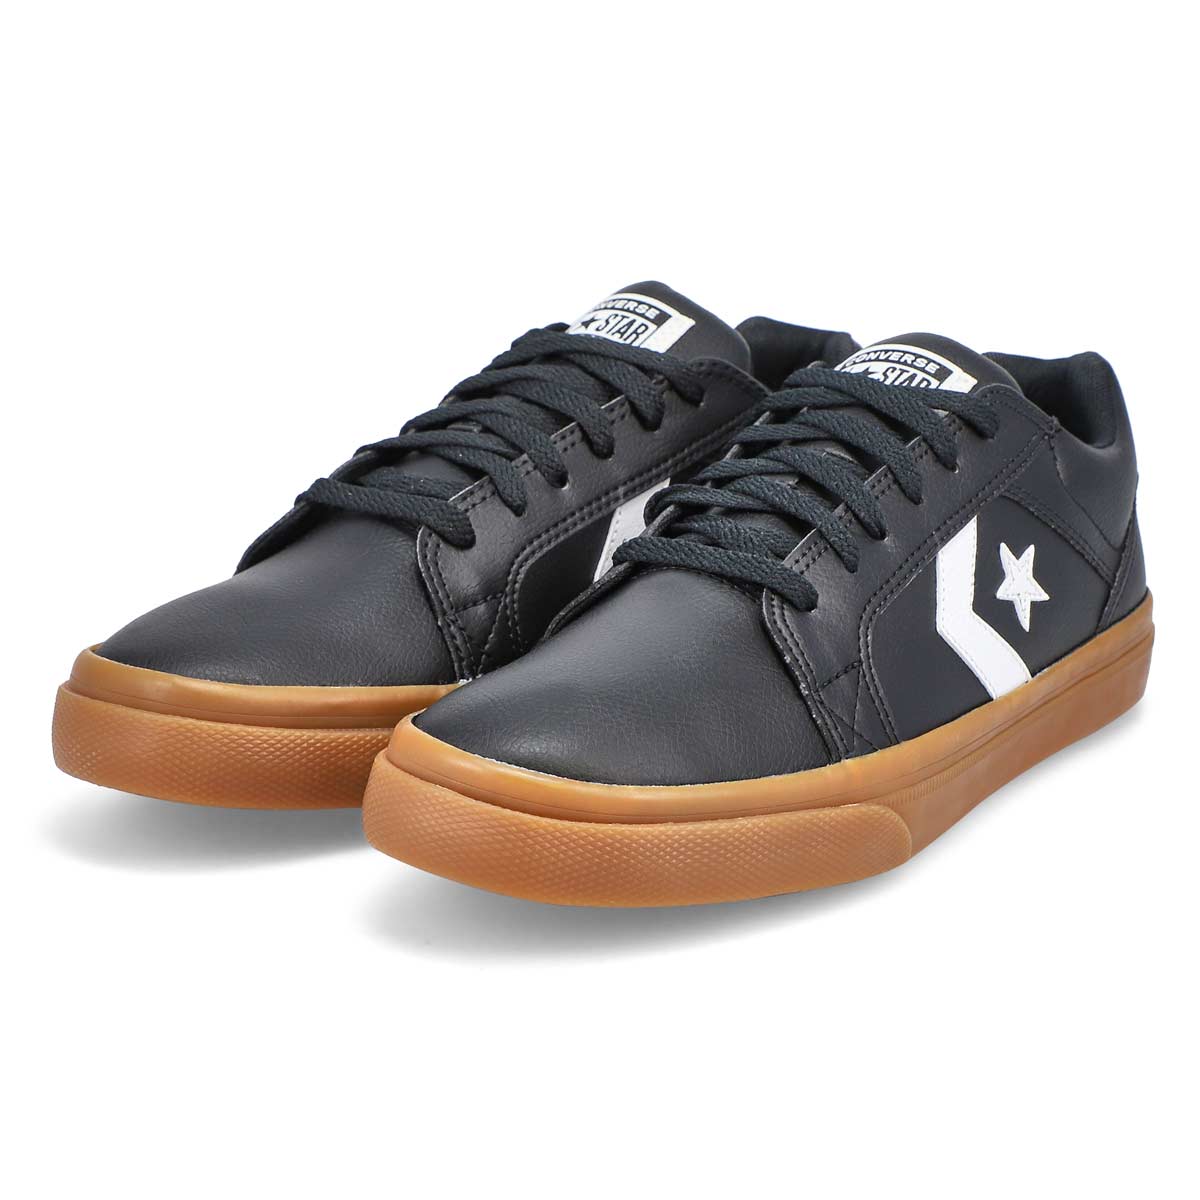 Men's El Distrito 2.0 Sneaker - Black/White/Gum